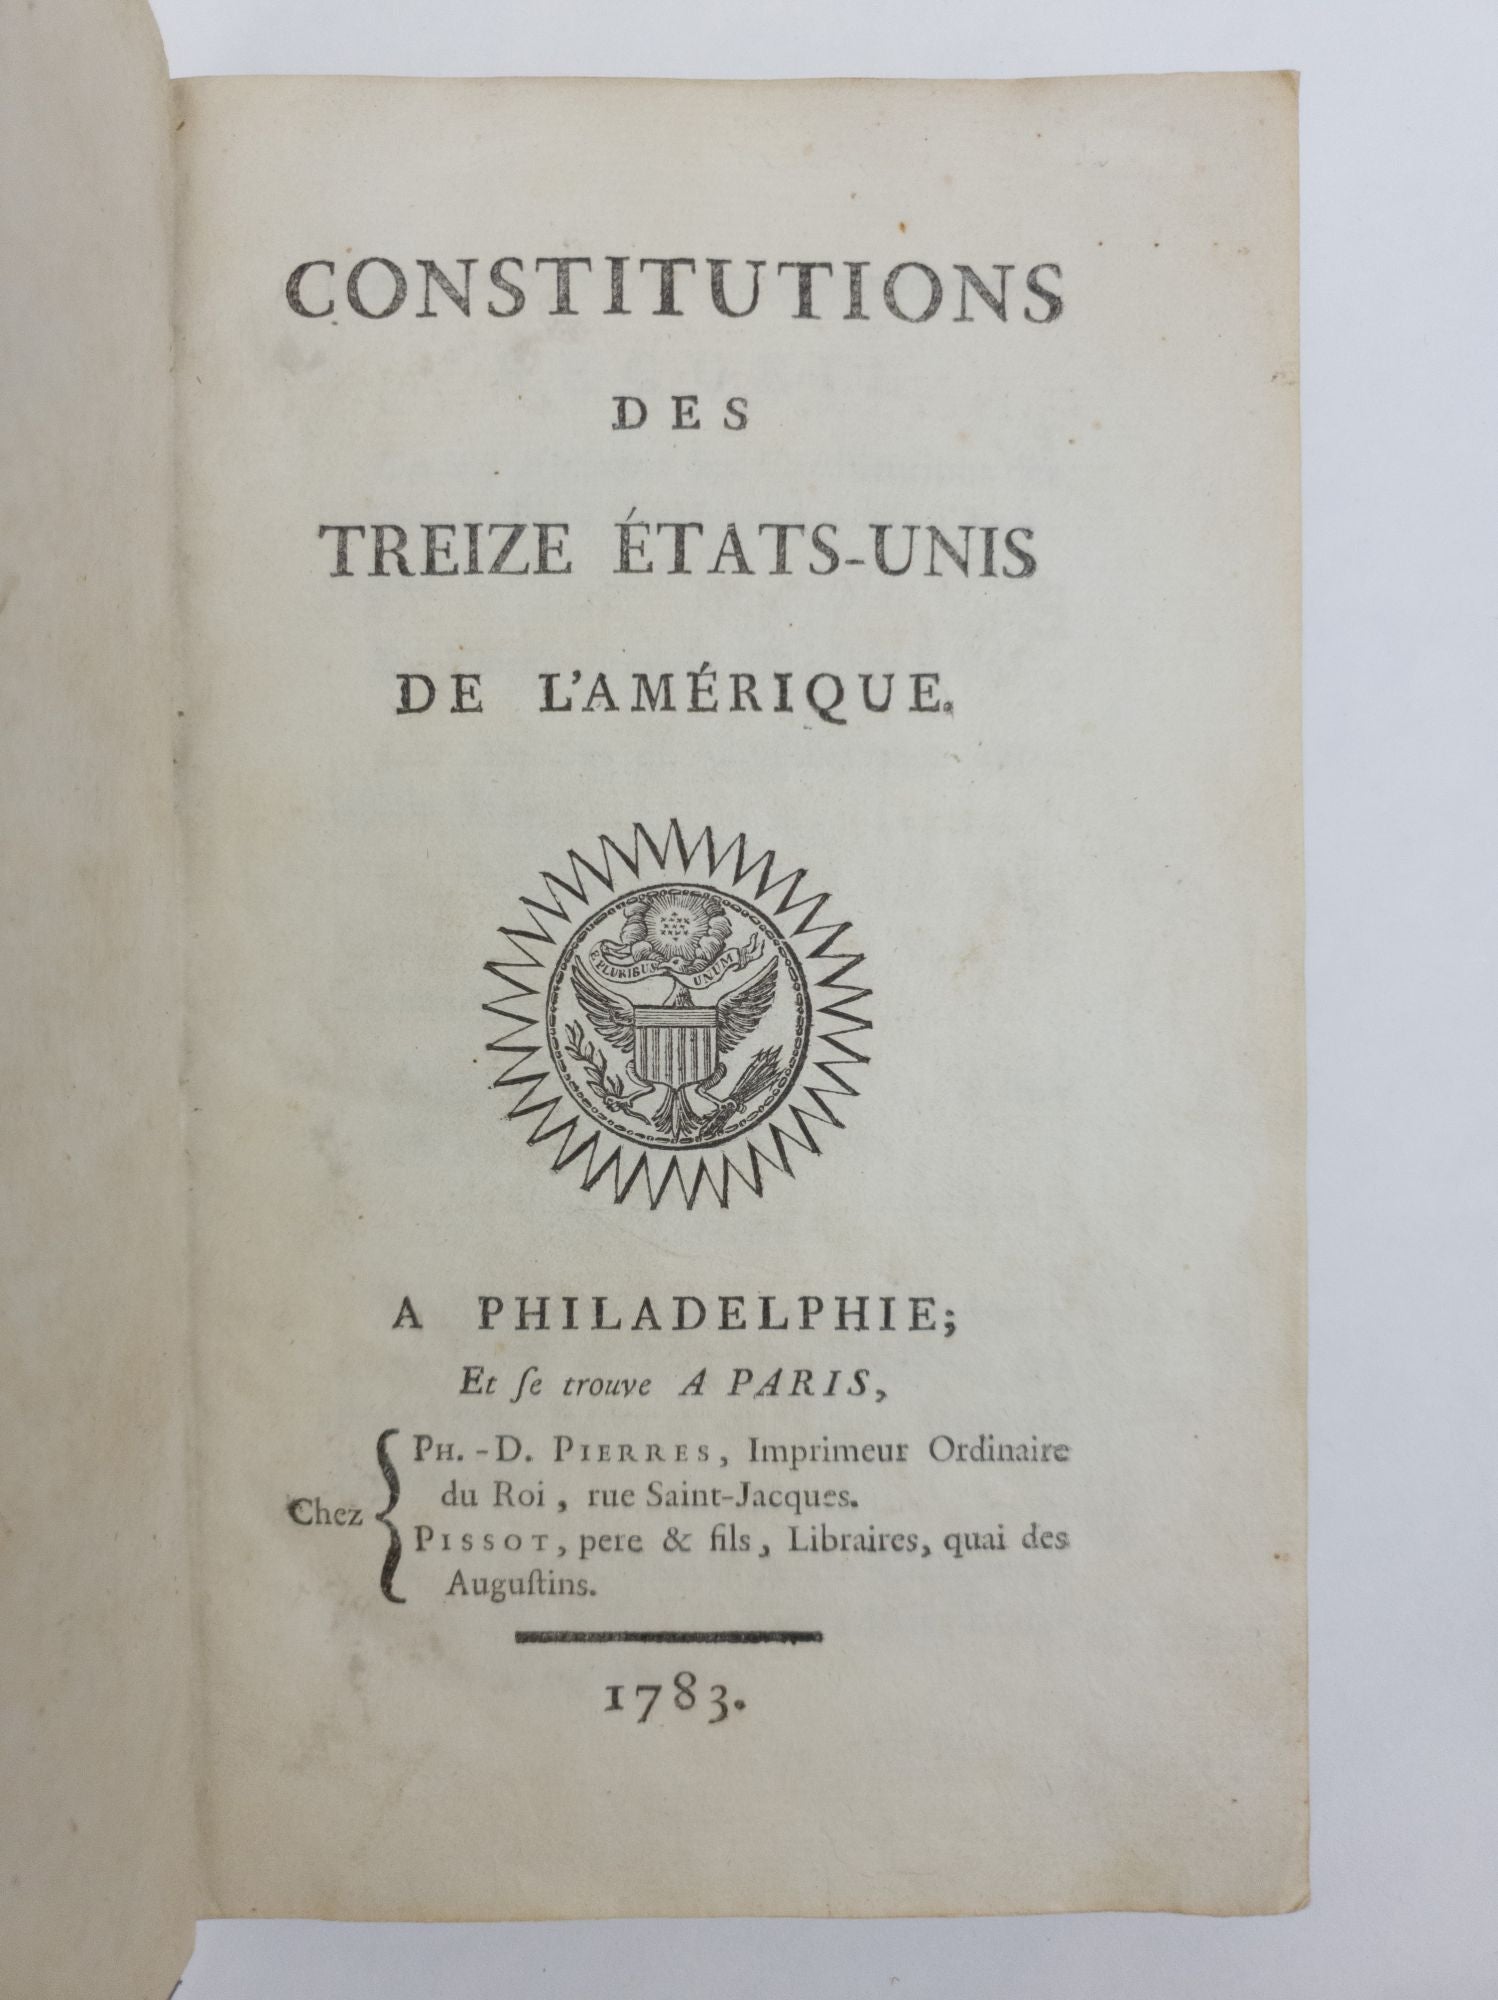 Product Image for CONSTITUTIONS DES TREIZE ETATS-UNIS DE L'AMÉRIQUE